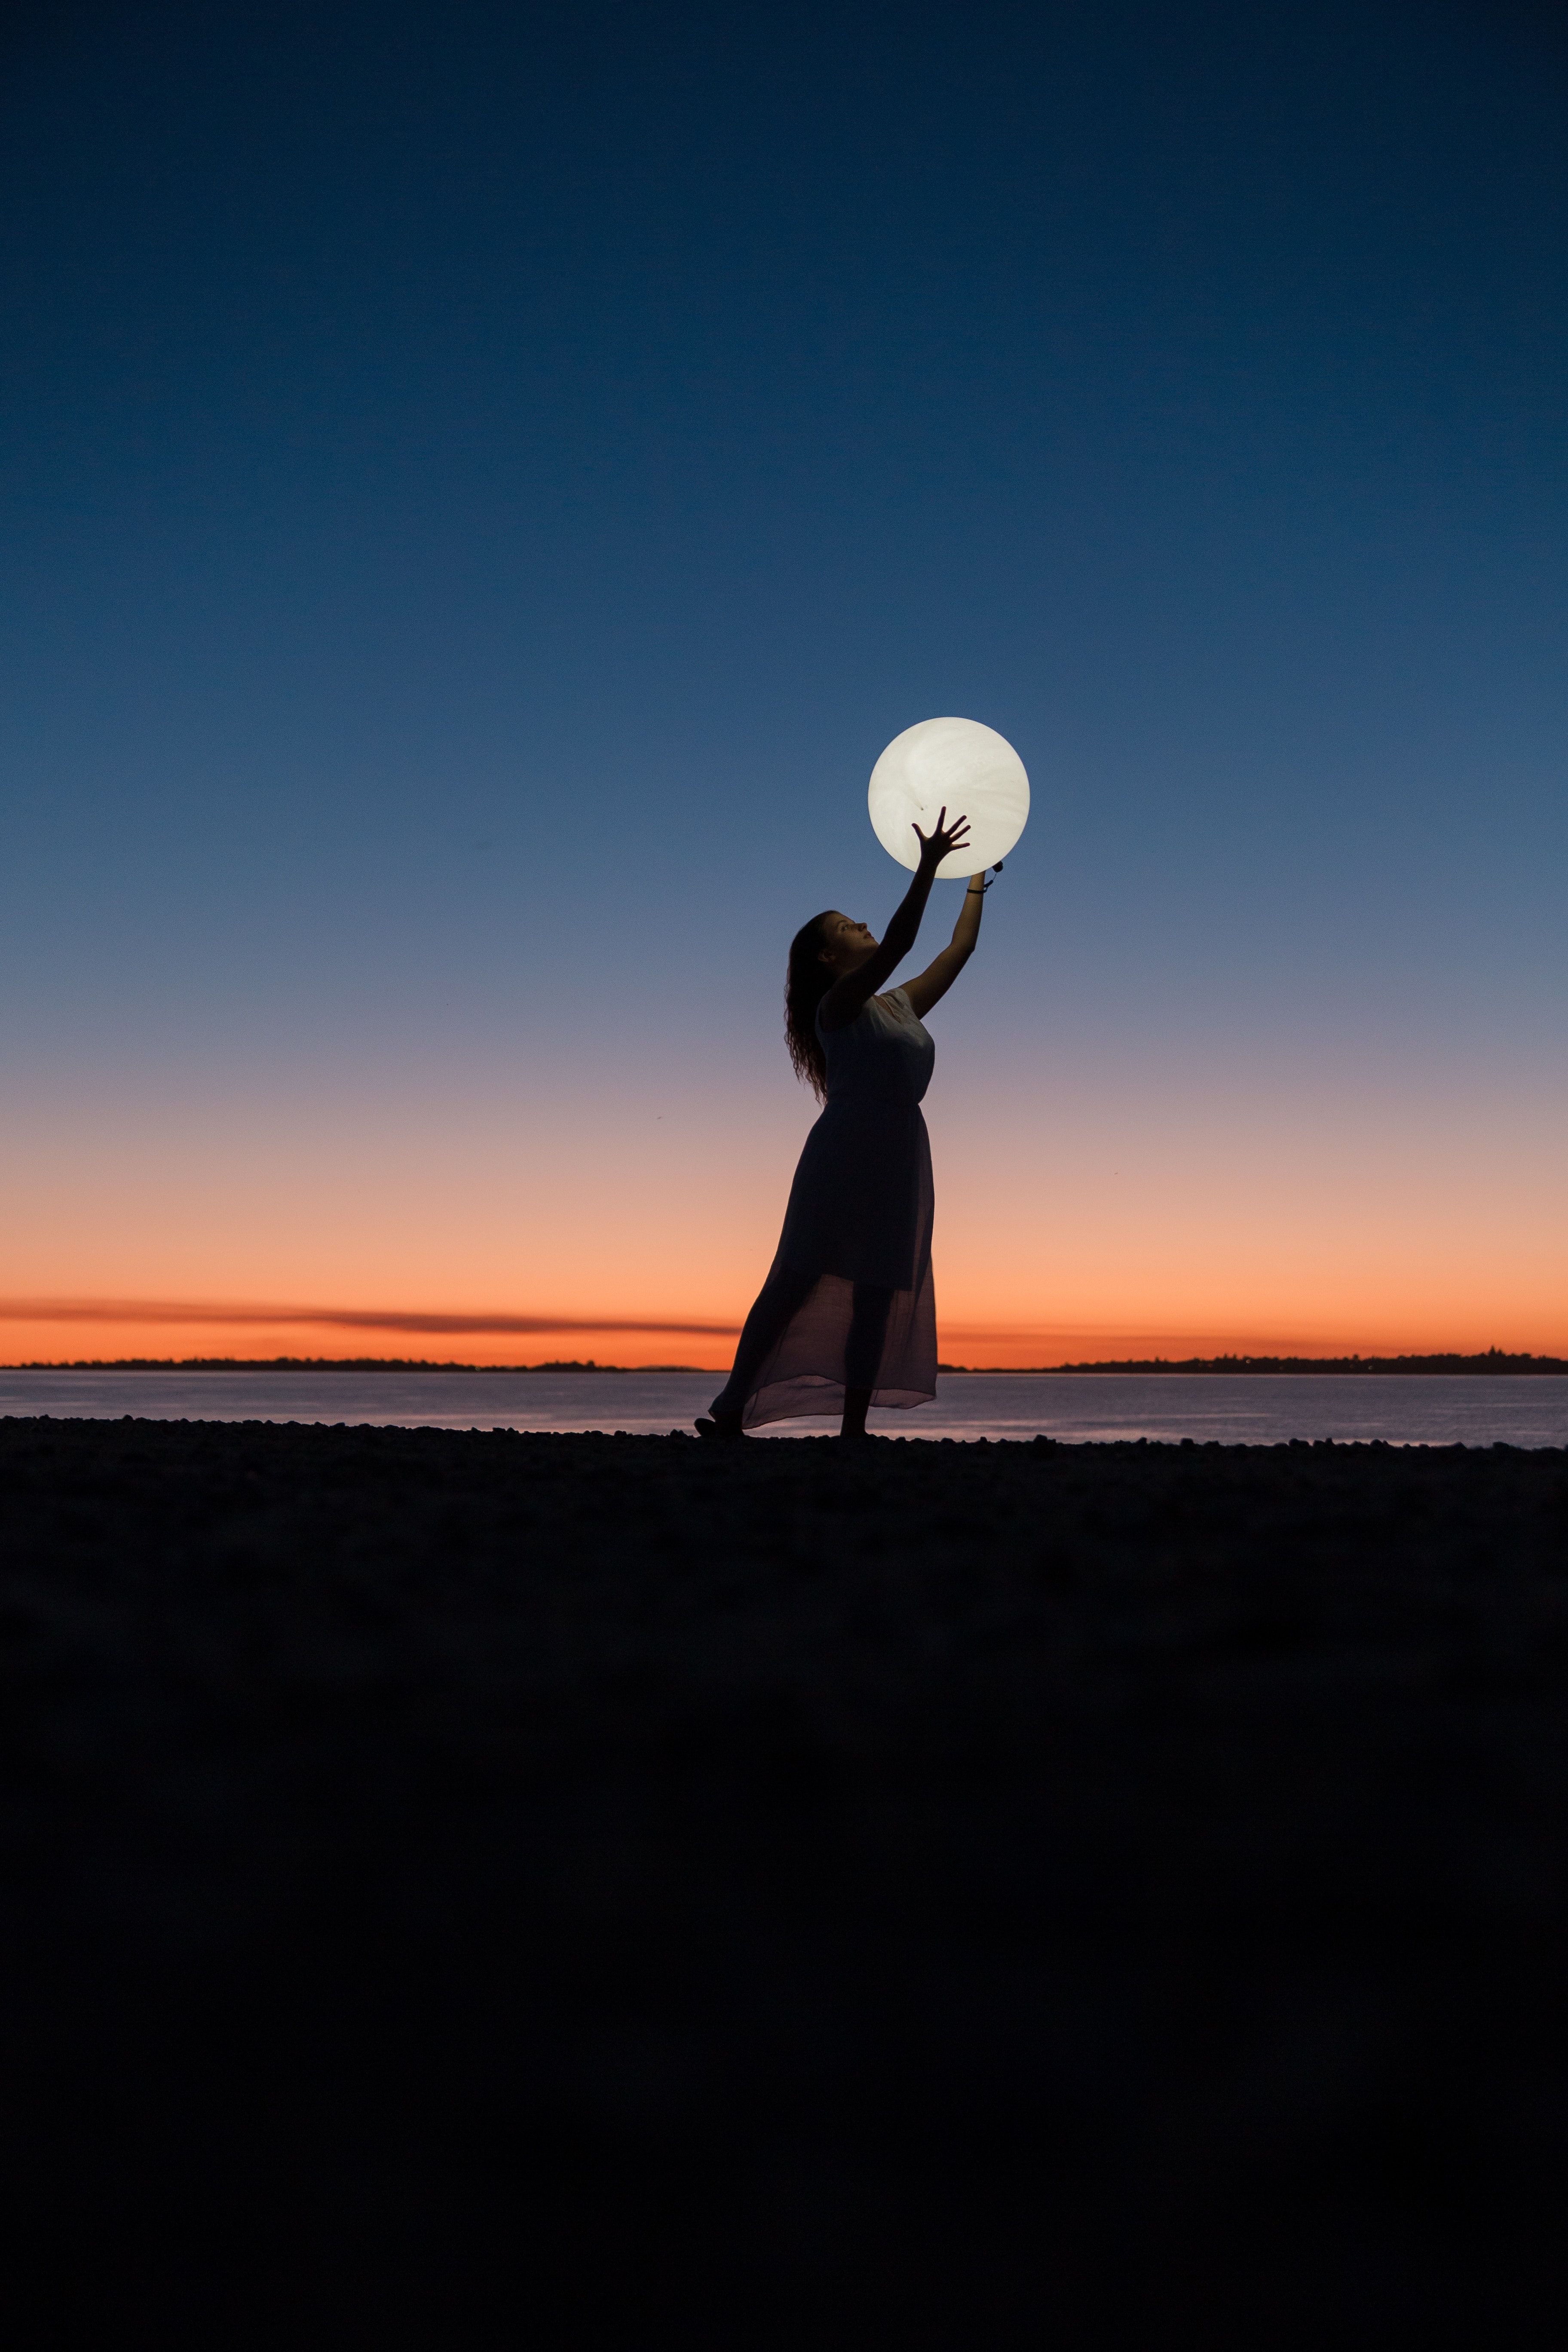 Girl 4K Wallpaper, Woman, Moon, Beach, Sunset, Photography